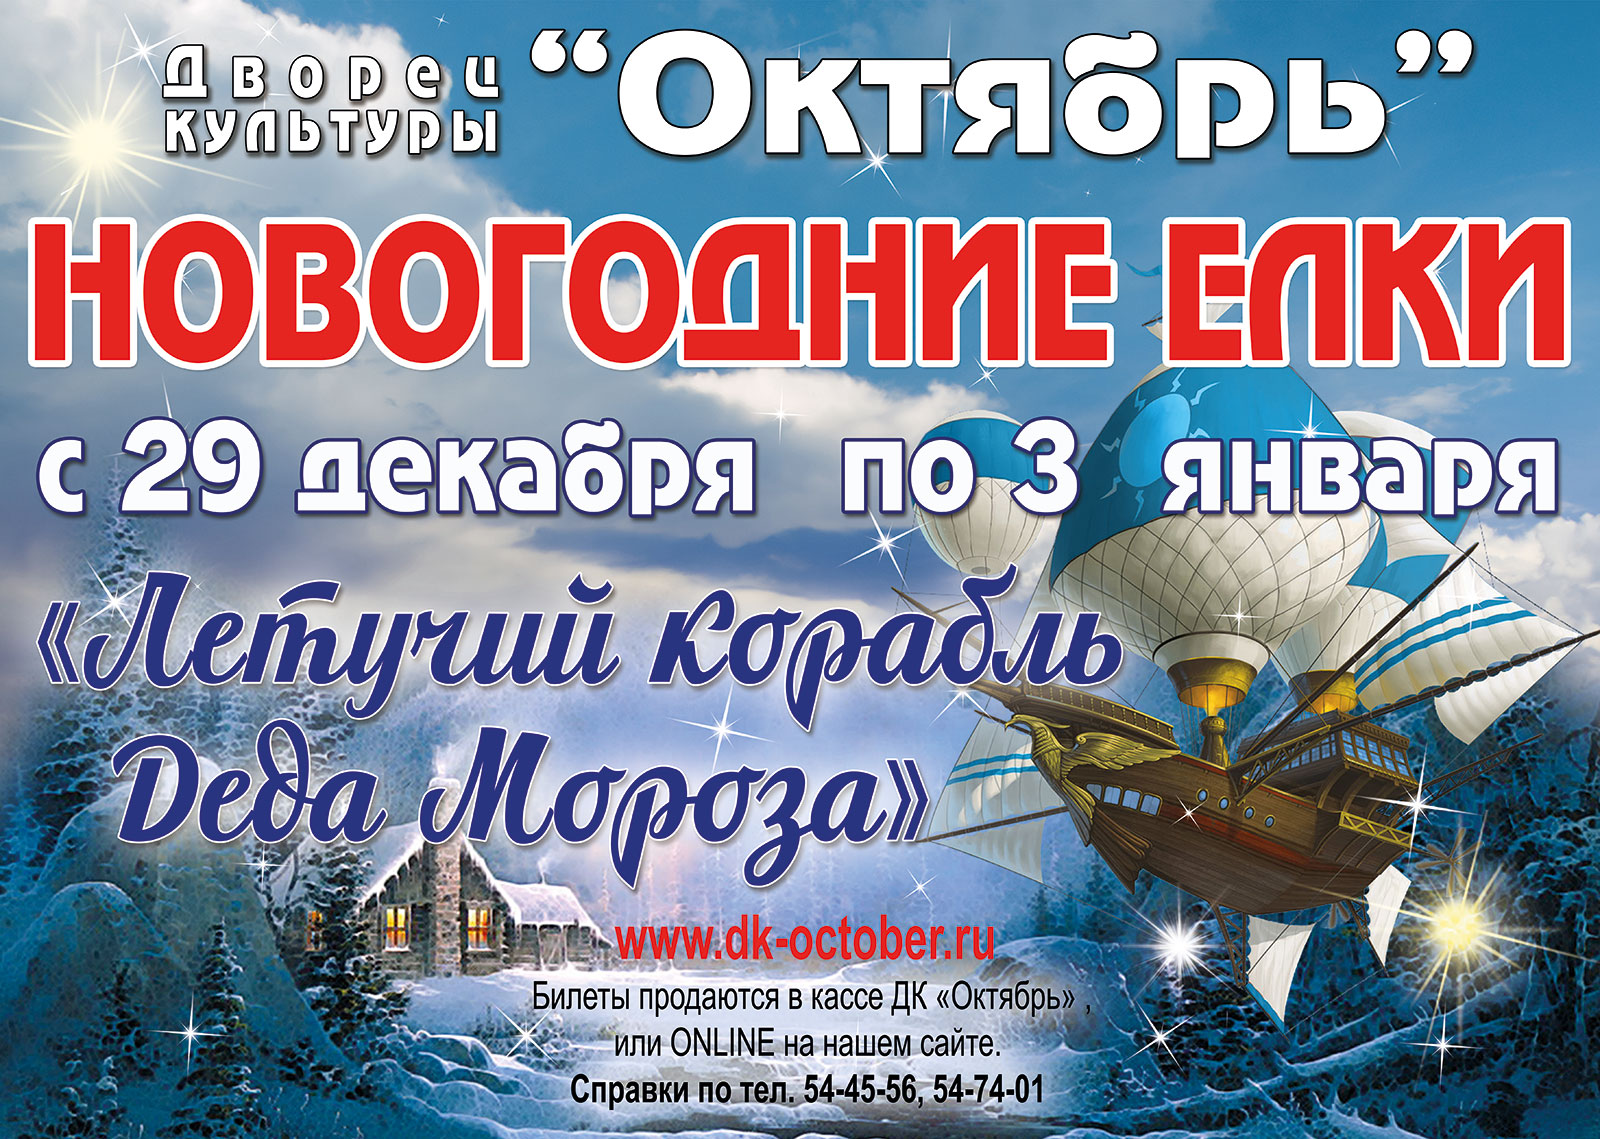 5 октября новый год. Летучий корабль новогоднее представление. Новый год в октябре. Представления для детей в Подольске.